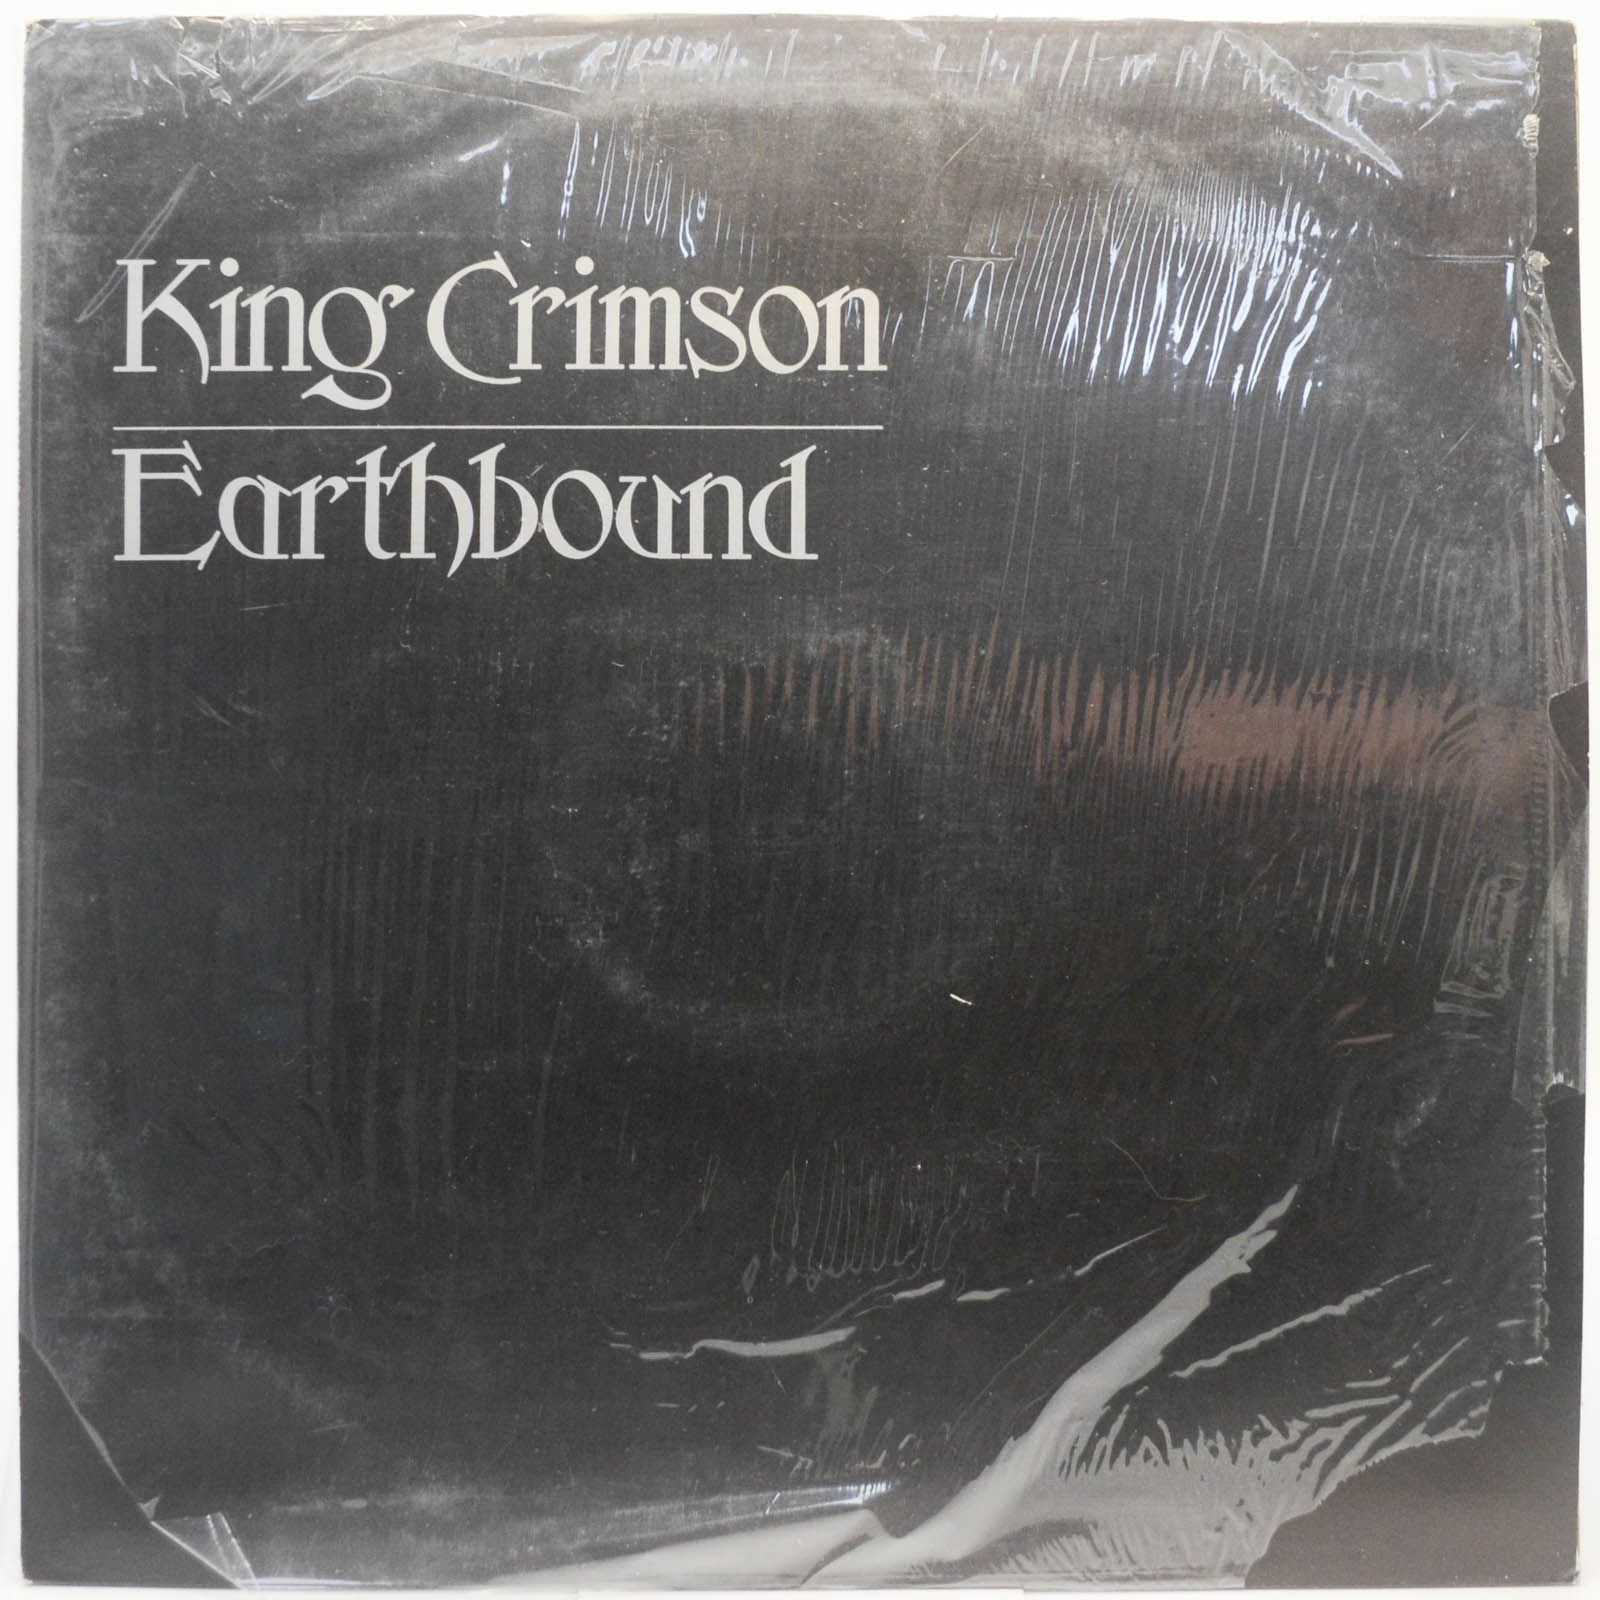 King Crimson — Earthbound, 1972